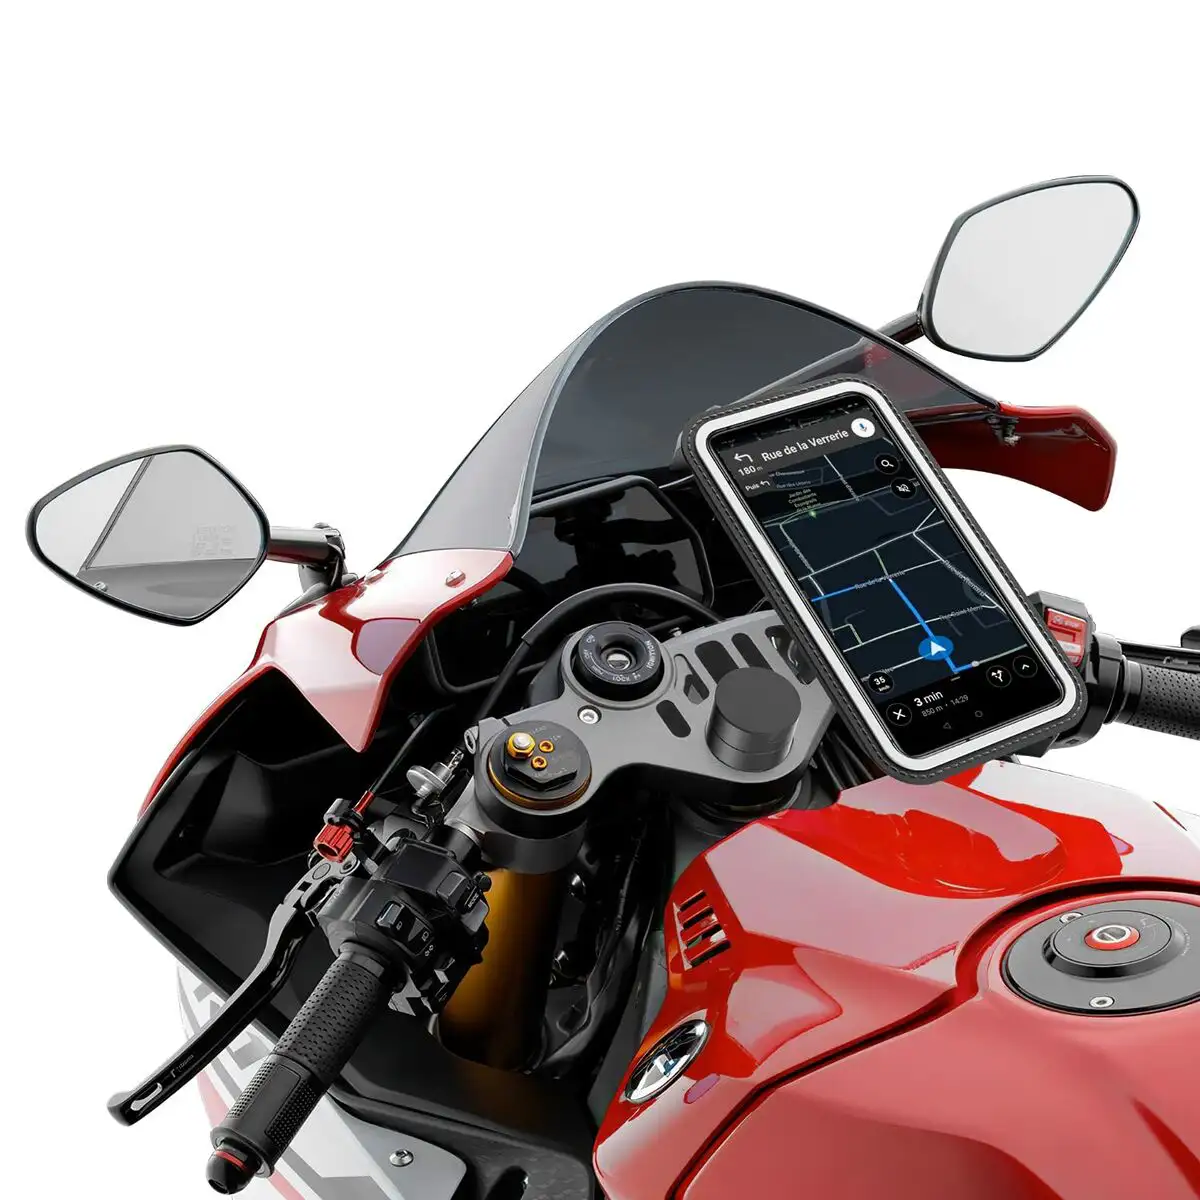 Support reglable shapeheart motocyclette reconditionne b _2610. DIAYTAR SENEGAL - Où Choisir Devient une Expérience Personnalisée. Explorez notre boutique en ligne pour découvrir des produits qui s'adaptent à votre style et à votre essence.